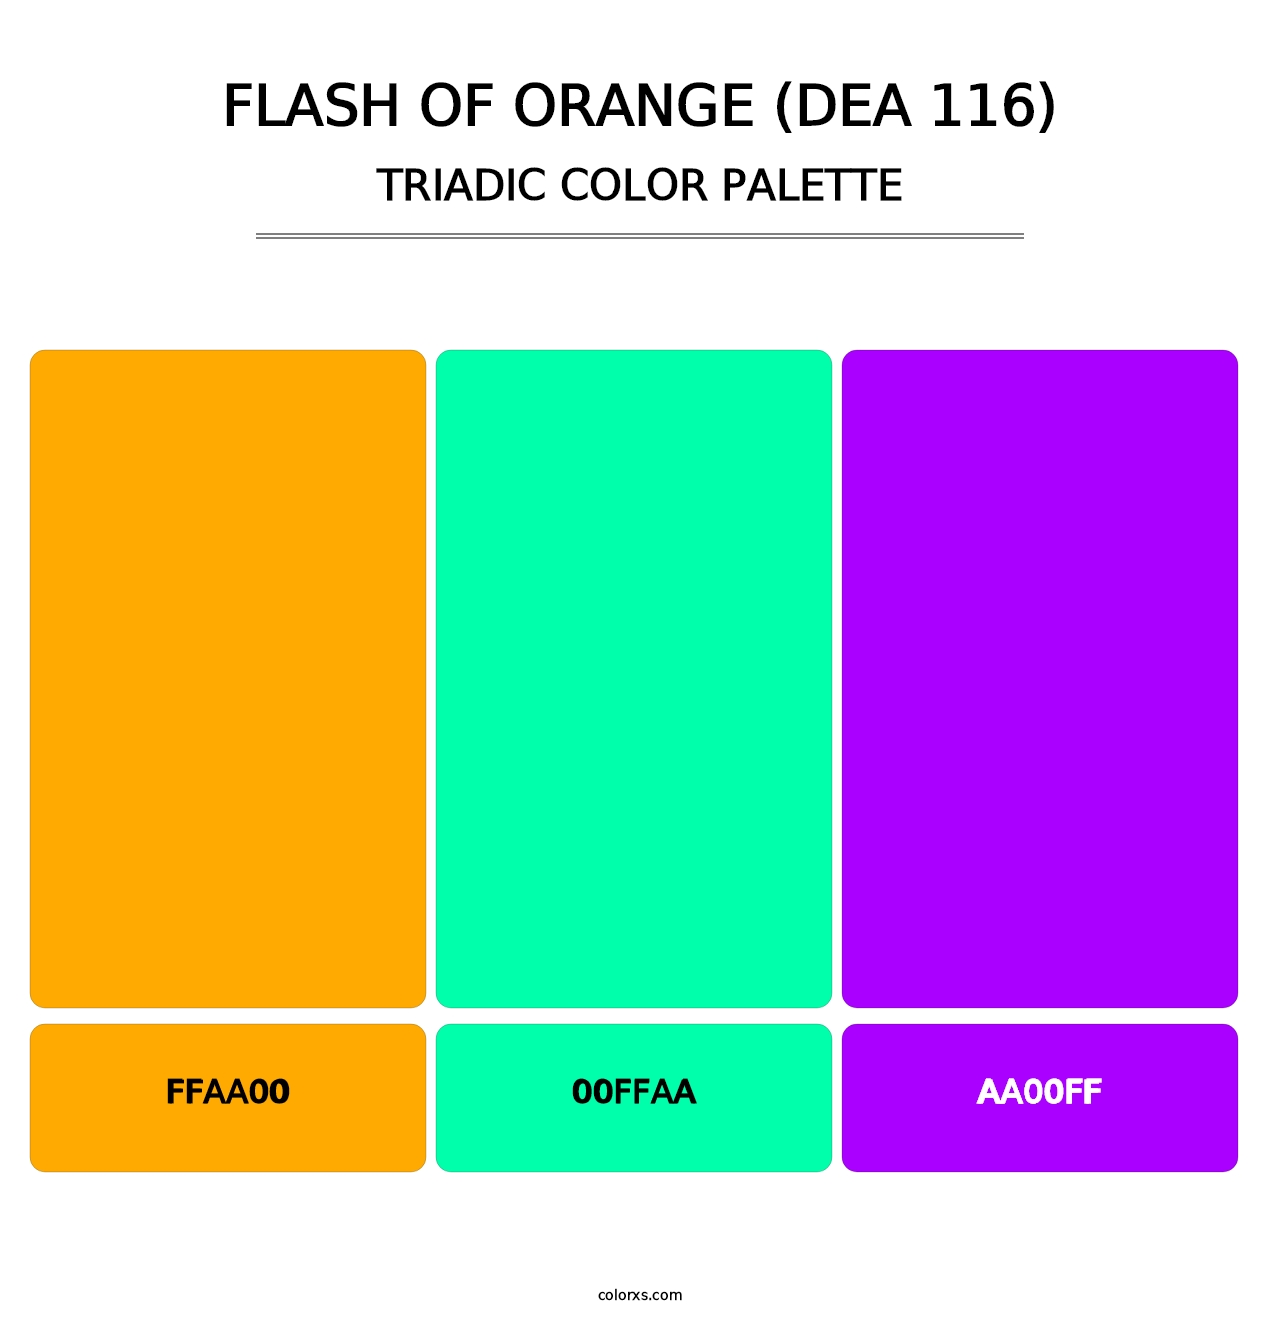 Flash of Orange (DEA 116) - Triadic Color Palette